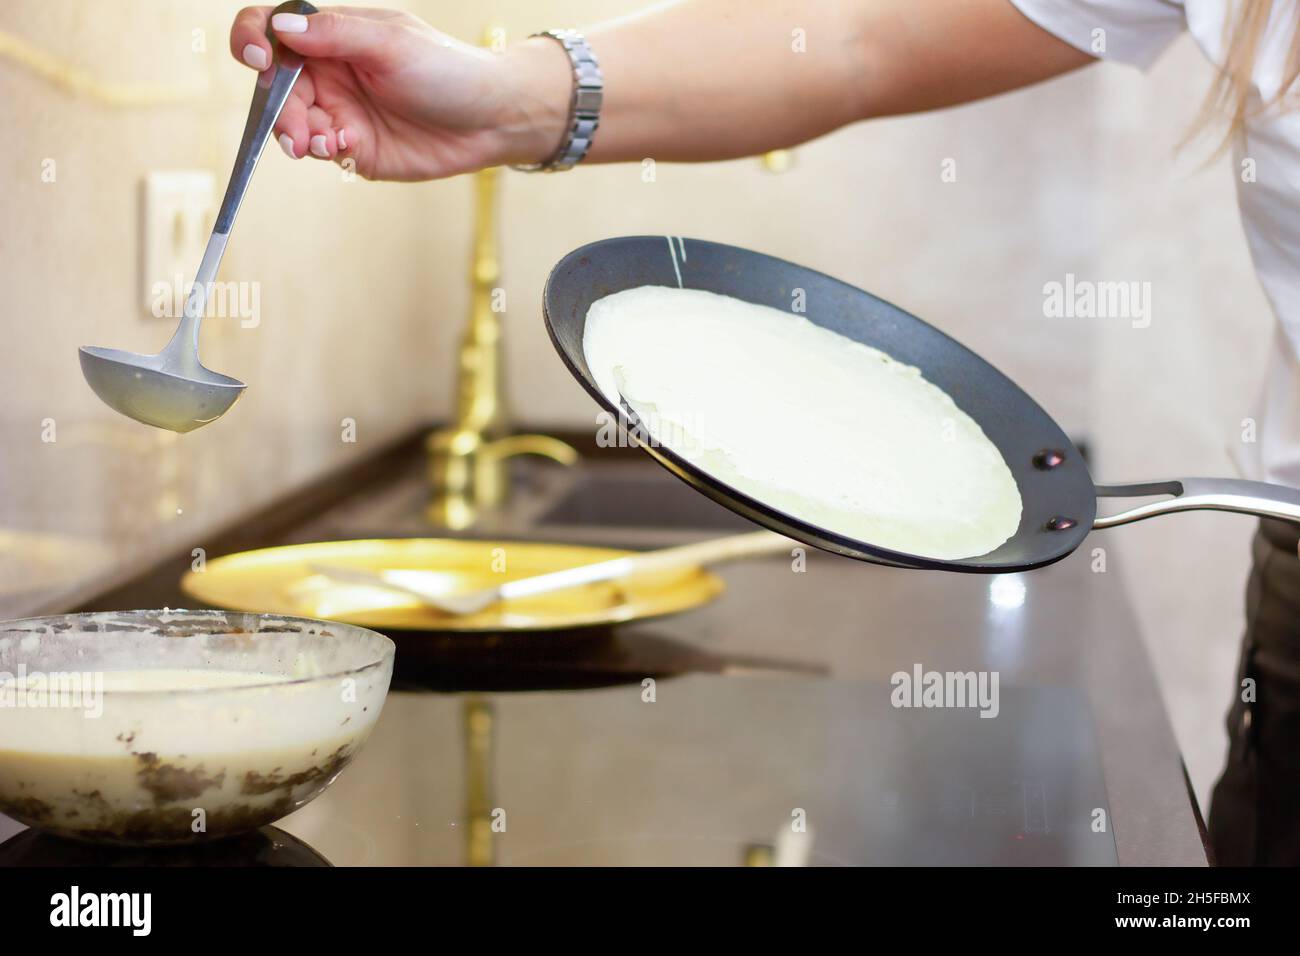 Une femme prépare des crêpes russes dans la cuisine, un gros plan sur une poêle. Le concept de cuisine russe, cuisine, vacances Maslenitsa.Il s'est fait maison Banque D'Images